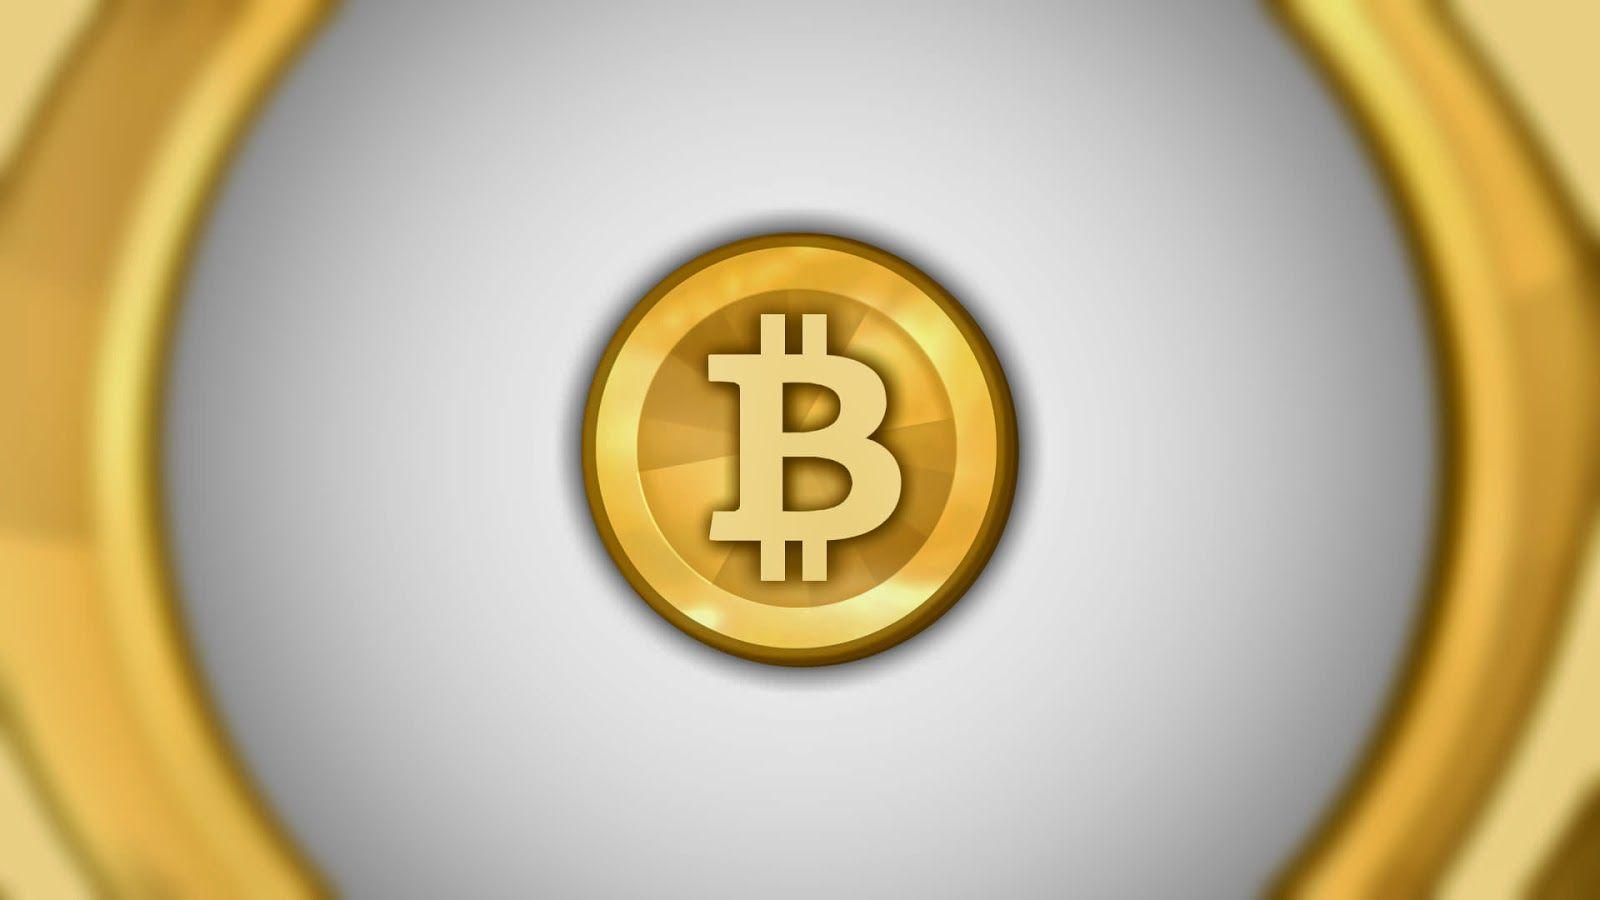 Gold Bitcoin Logo - White And Gold Bitcoin Logo 2014 | Bitcoin Wallpaper